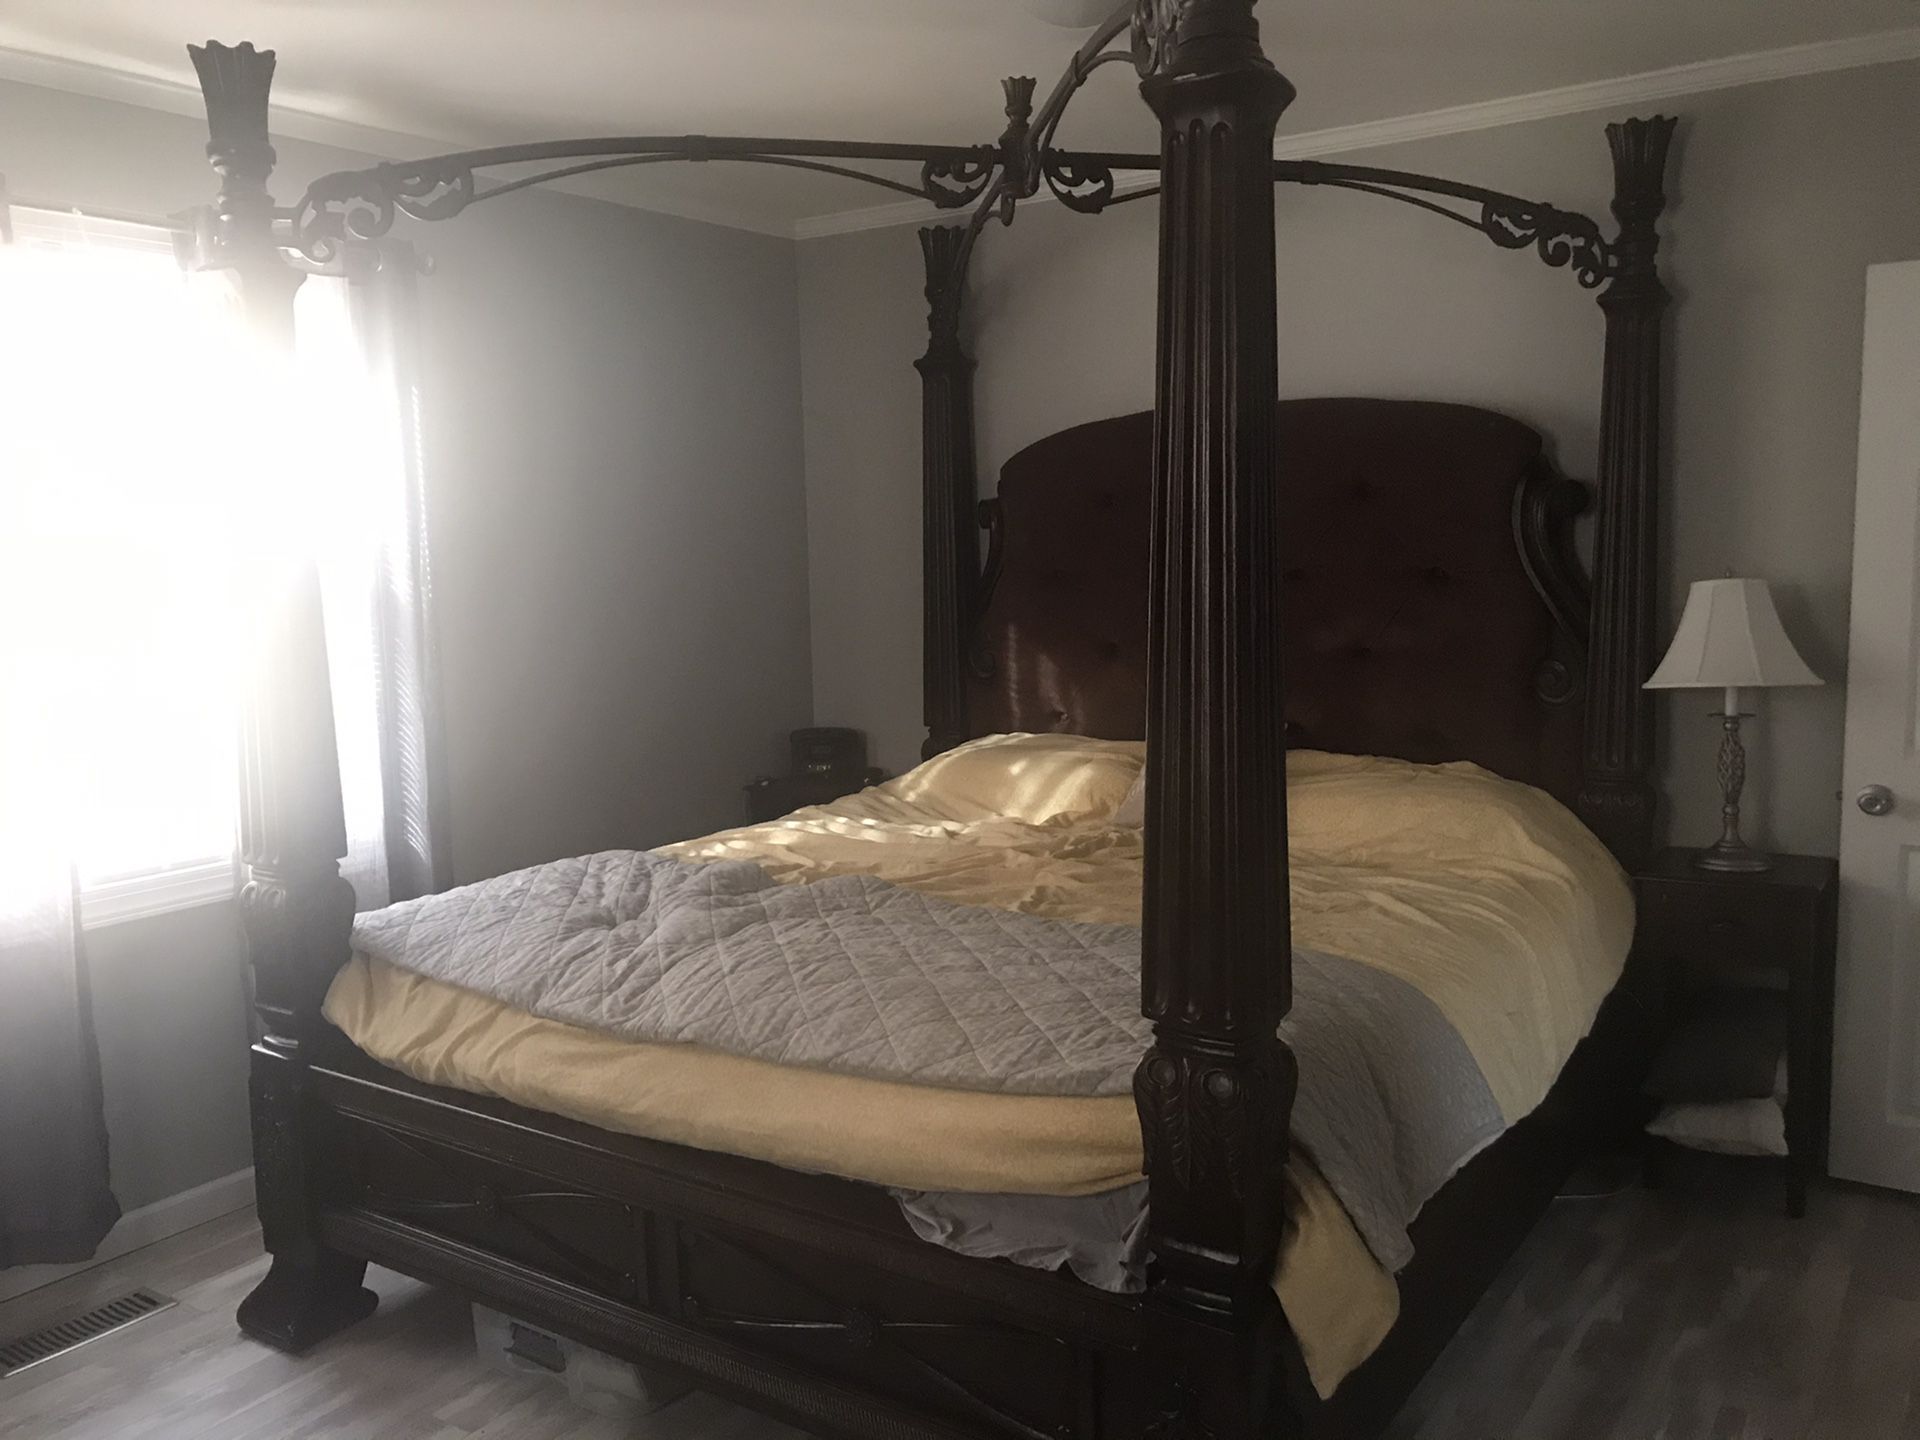 Ashley furniture king bed frame